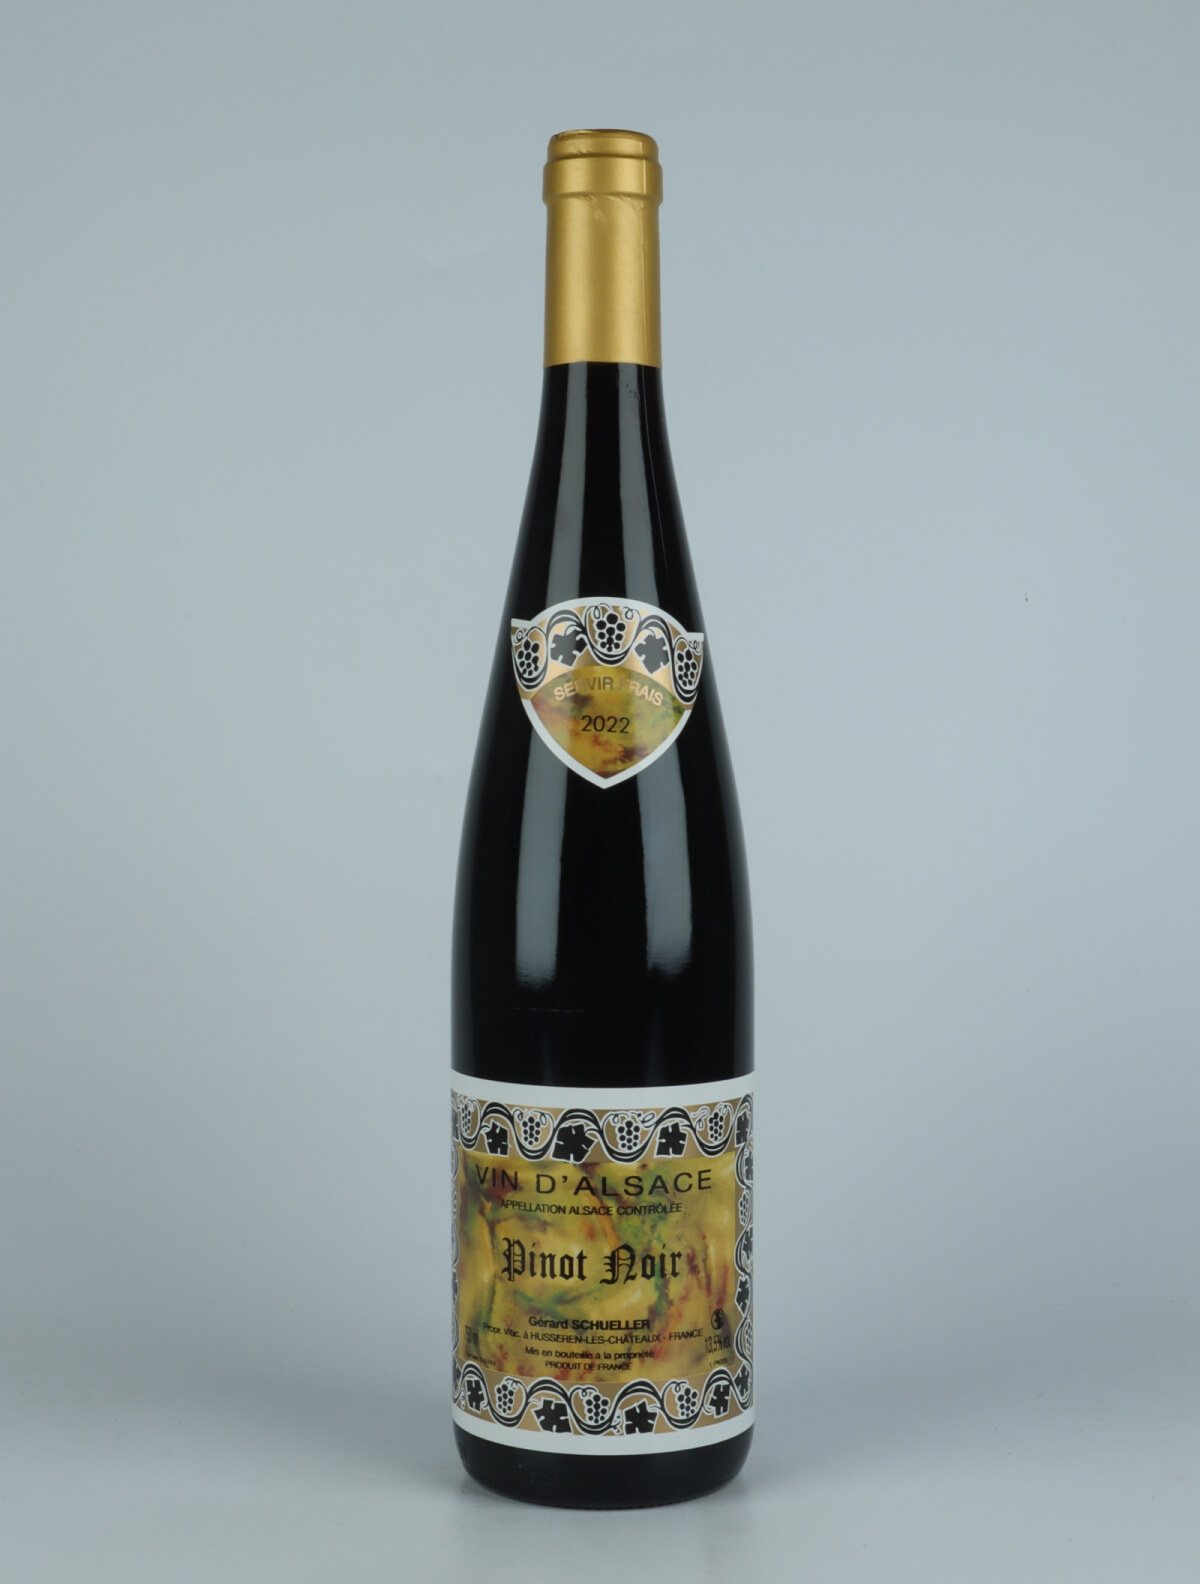 En flaske 2022 Pinot Noir Rødvin fra Gérard Schueller, Alsace i Frankrig